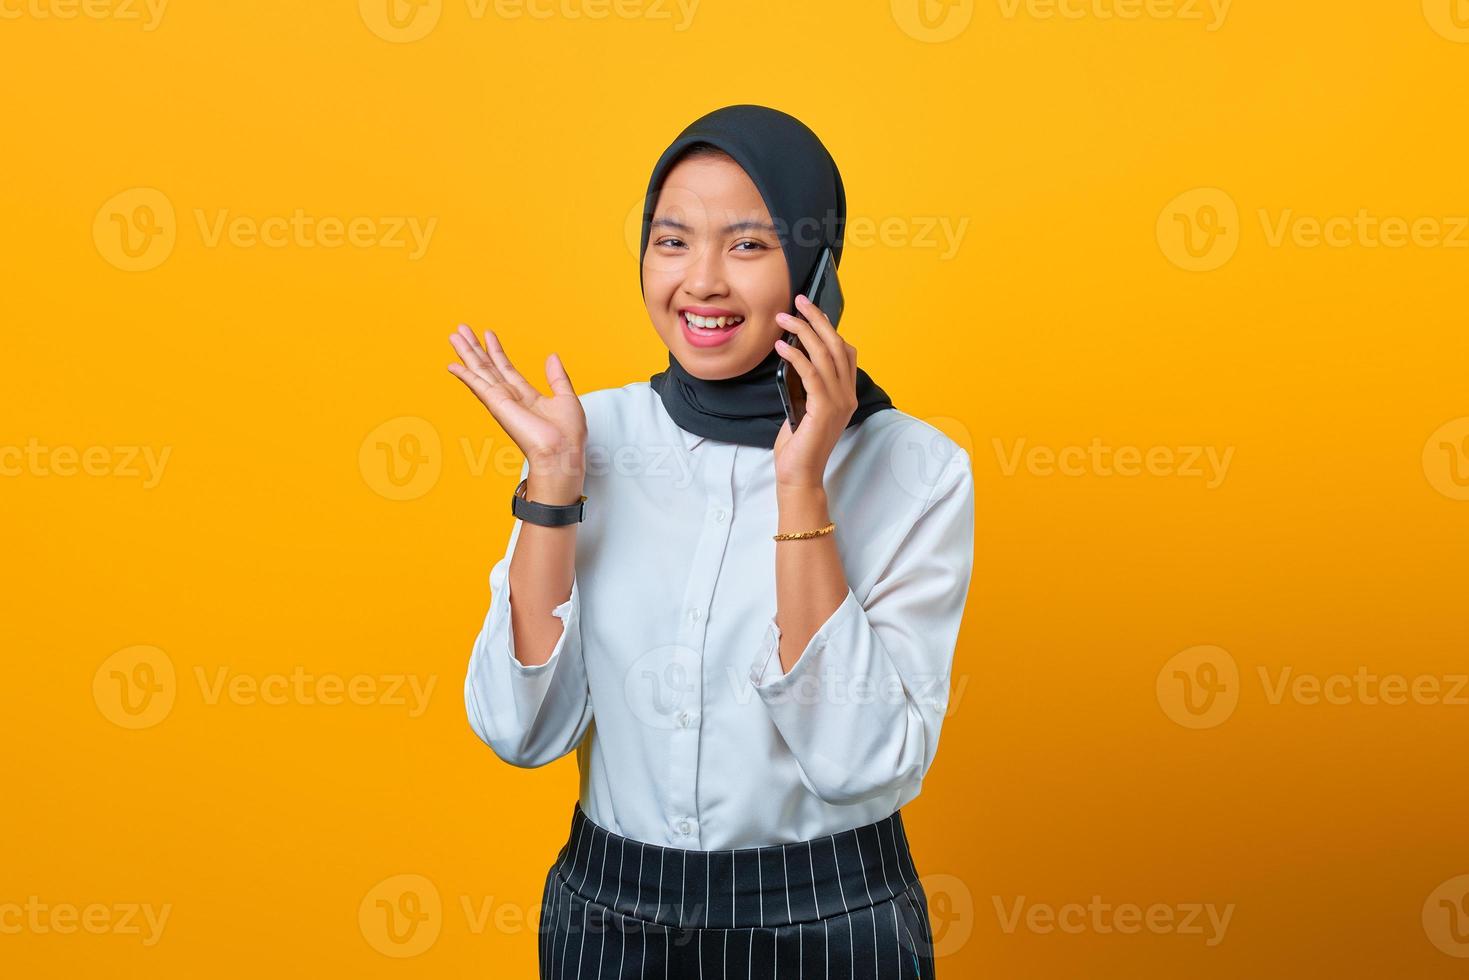 jovem asiática sorridente falando em smartphone isolado sobre fundo amarelo foto